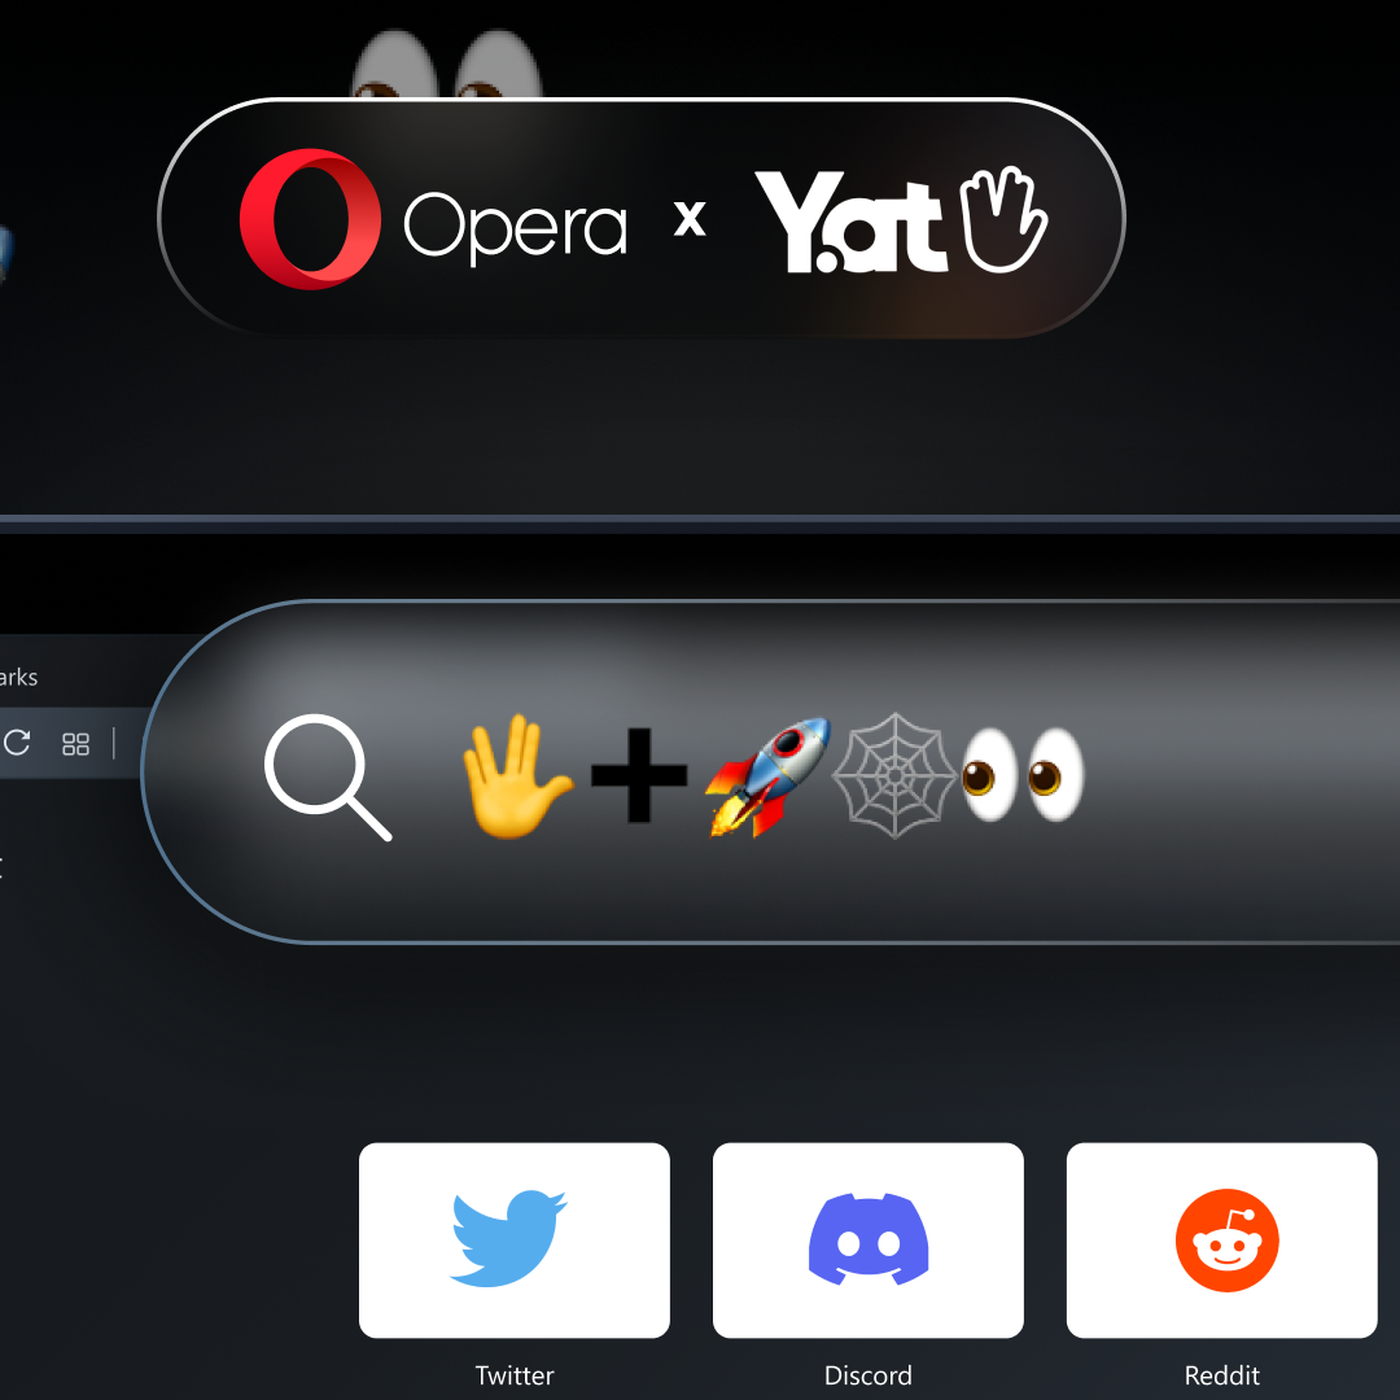 Opera reconocerá las direcciones webs basadas en emojis